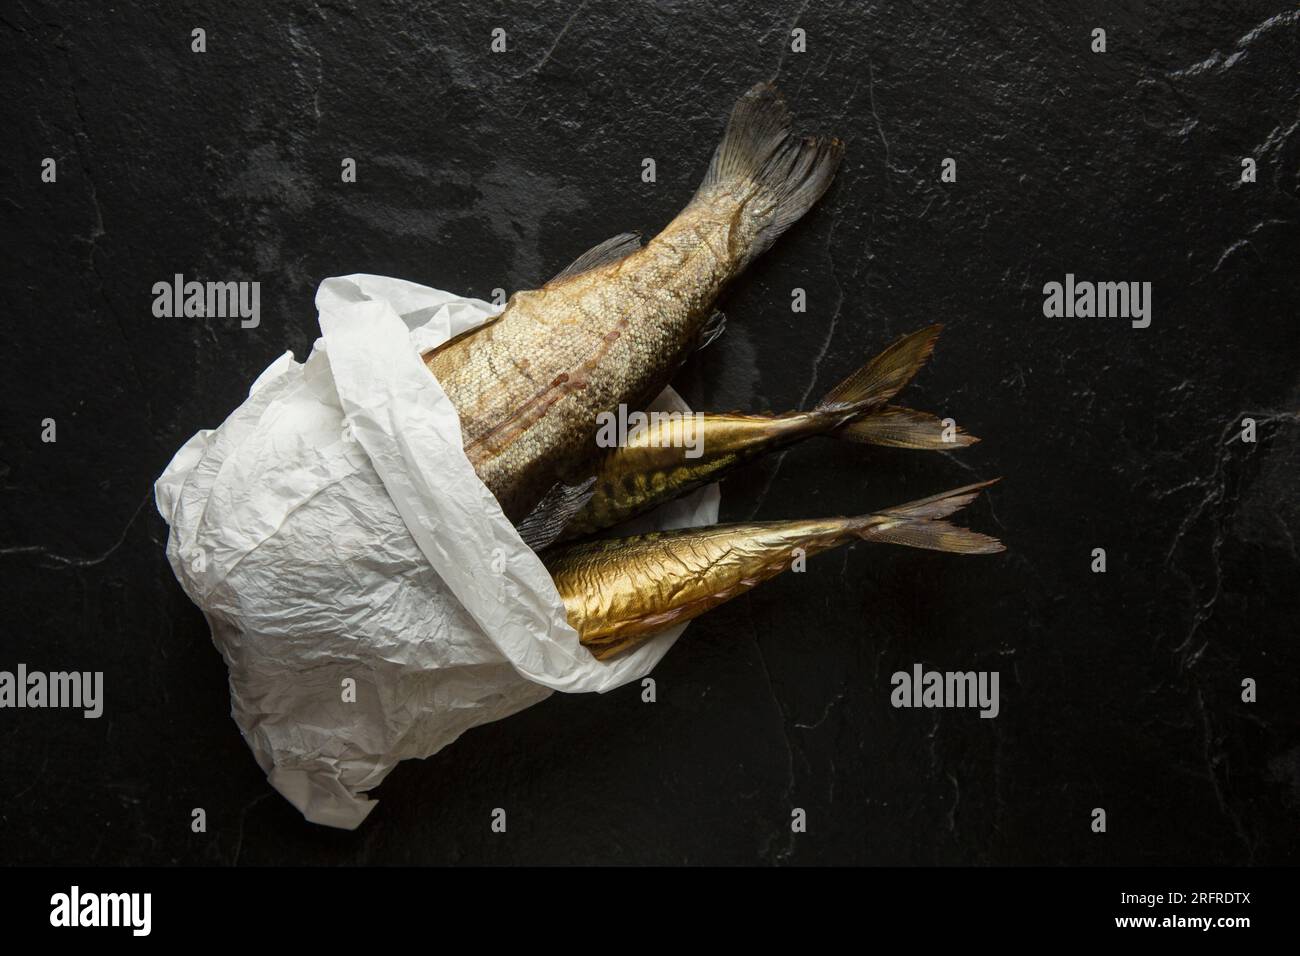 Heiße geräucherte Makrele, Scomber Scombrus und heiße geräucherte Regenbogenforelle, Oncorhynchus mykiss. England GB Stockfoto